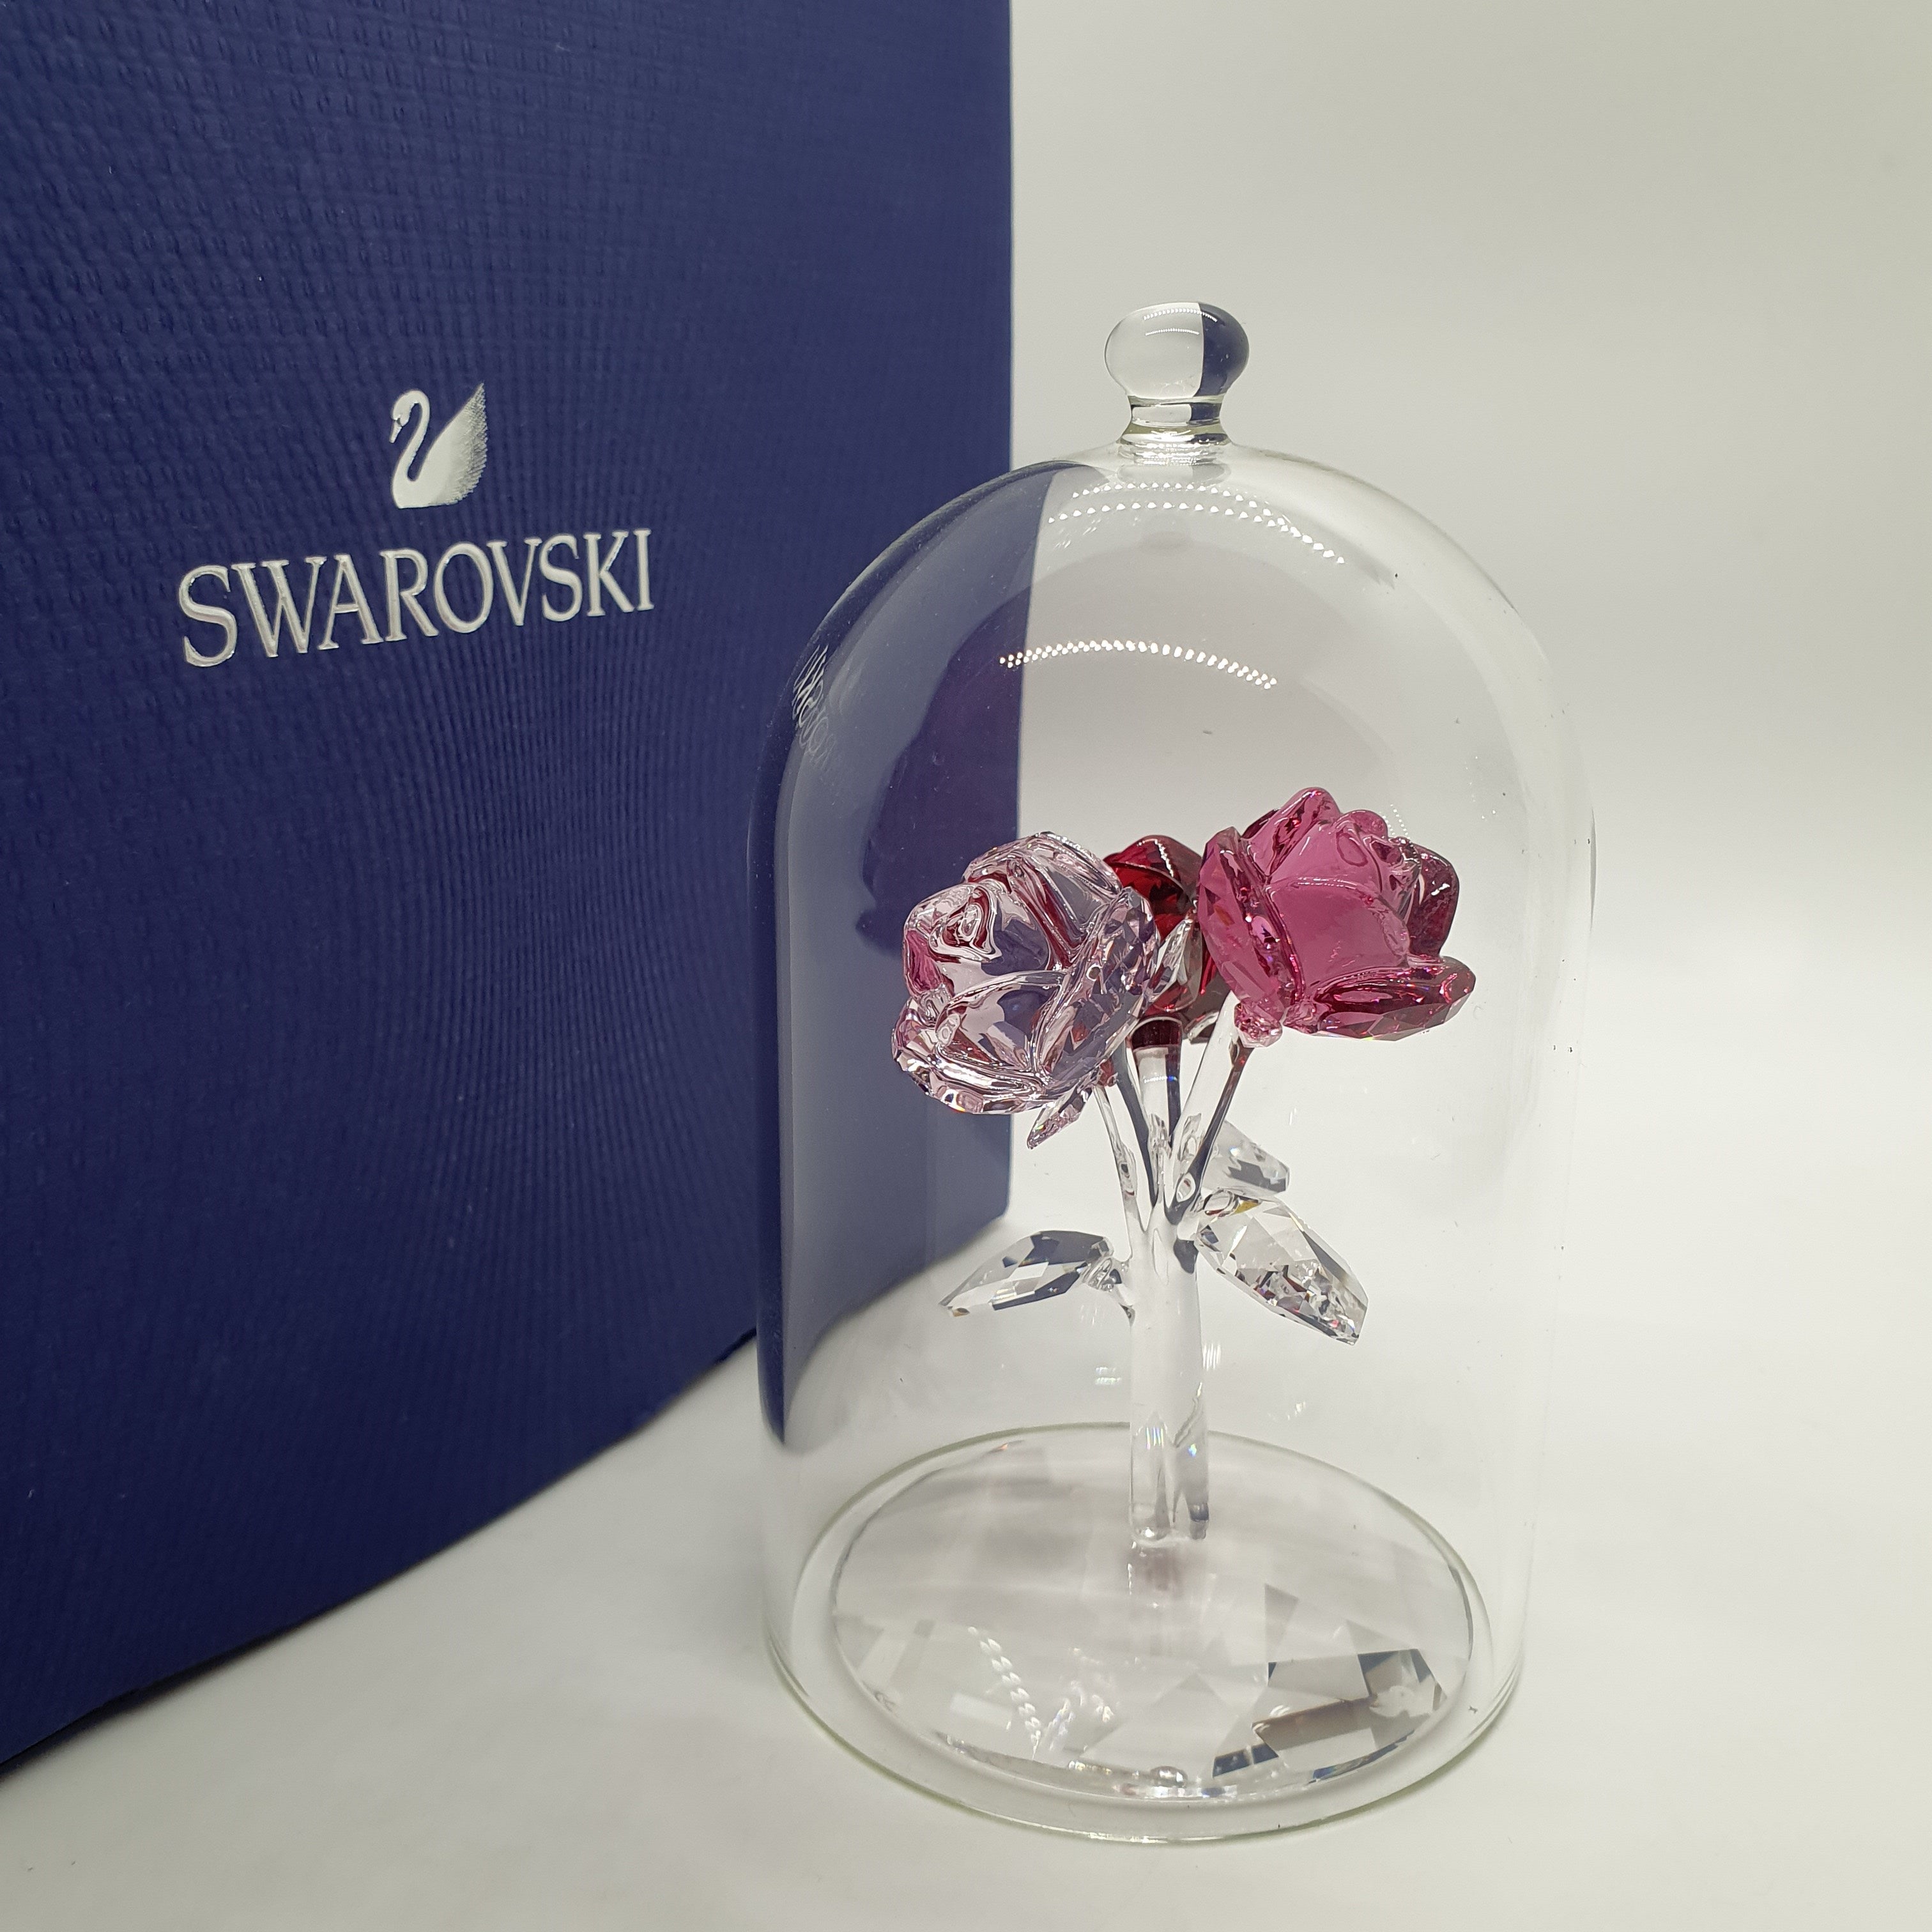 WALSER Autositzbezug Scarlett mit Kristallen von Swarovski Art.Nr.: 11066  ❱❱ günstig kaufen